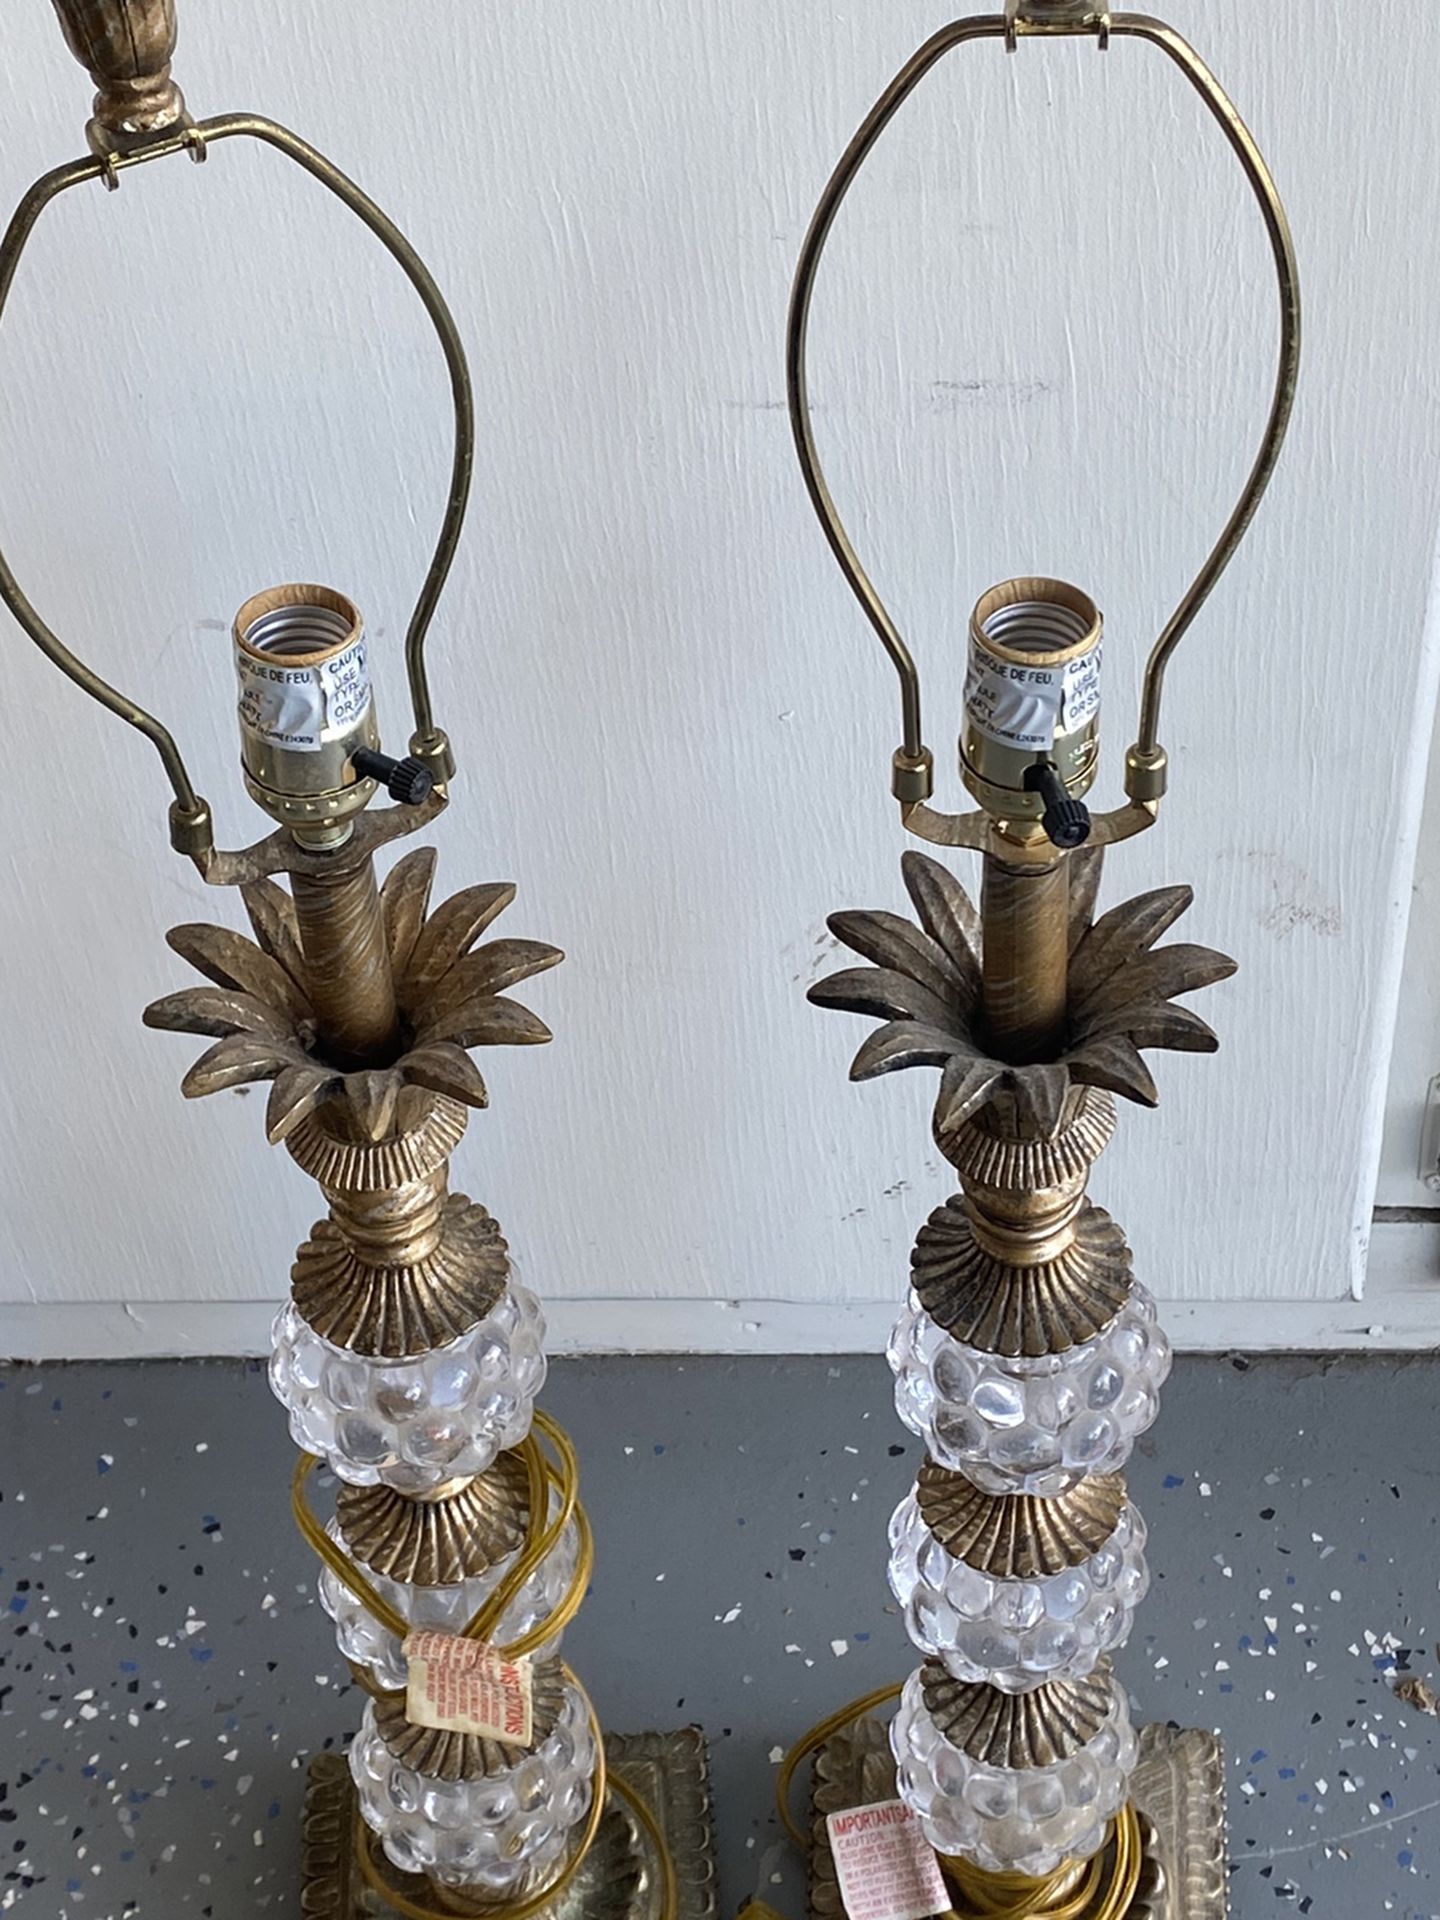 2 Vintage Crystal Lamps